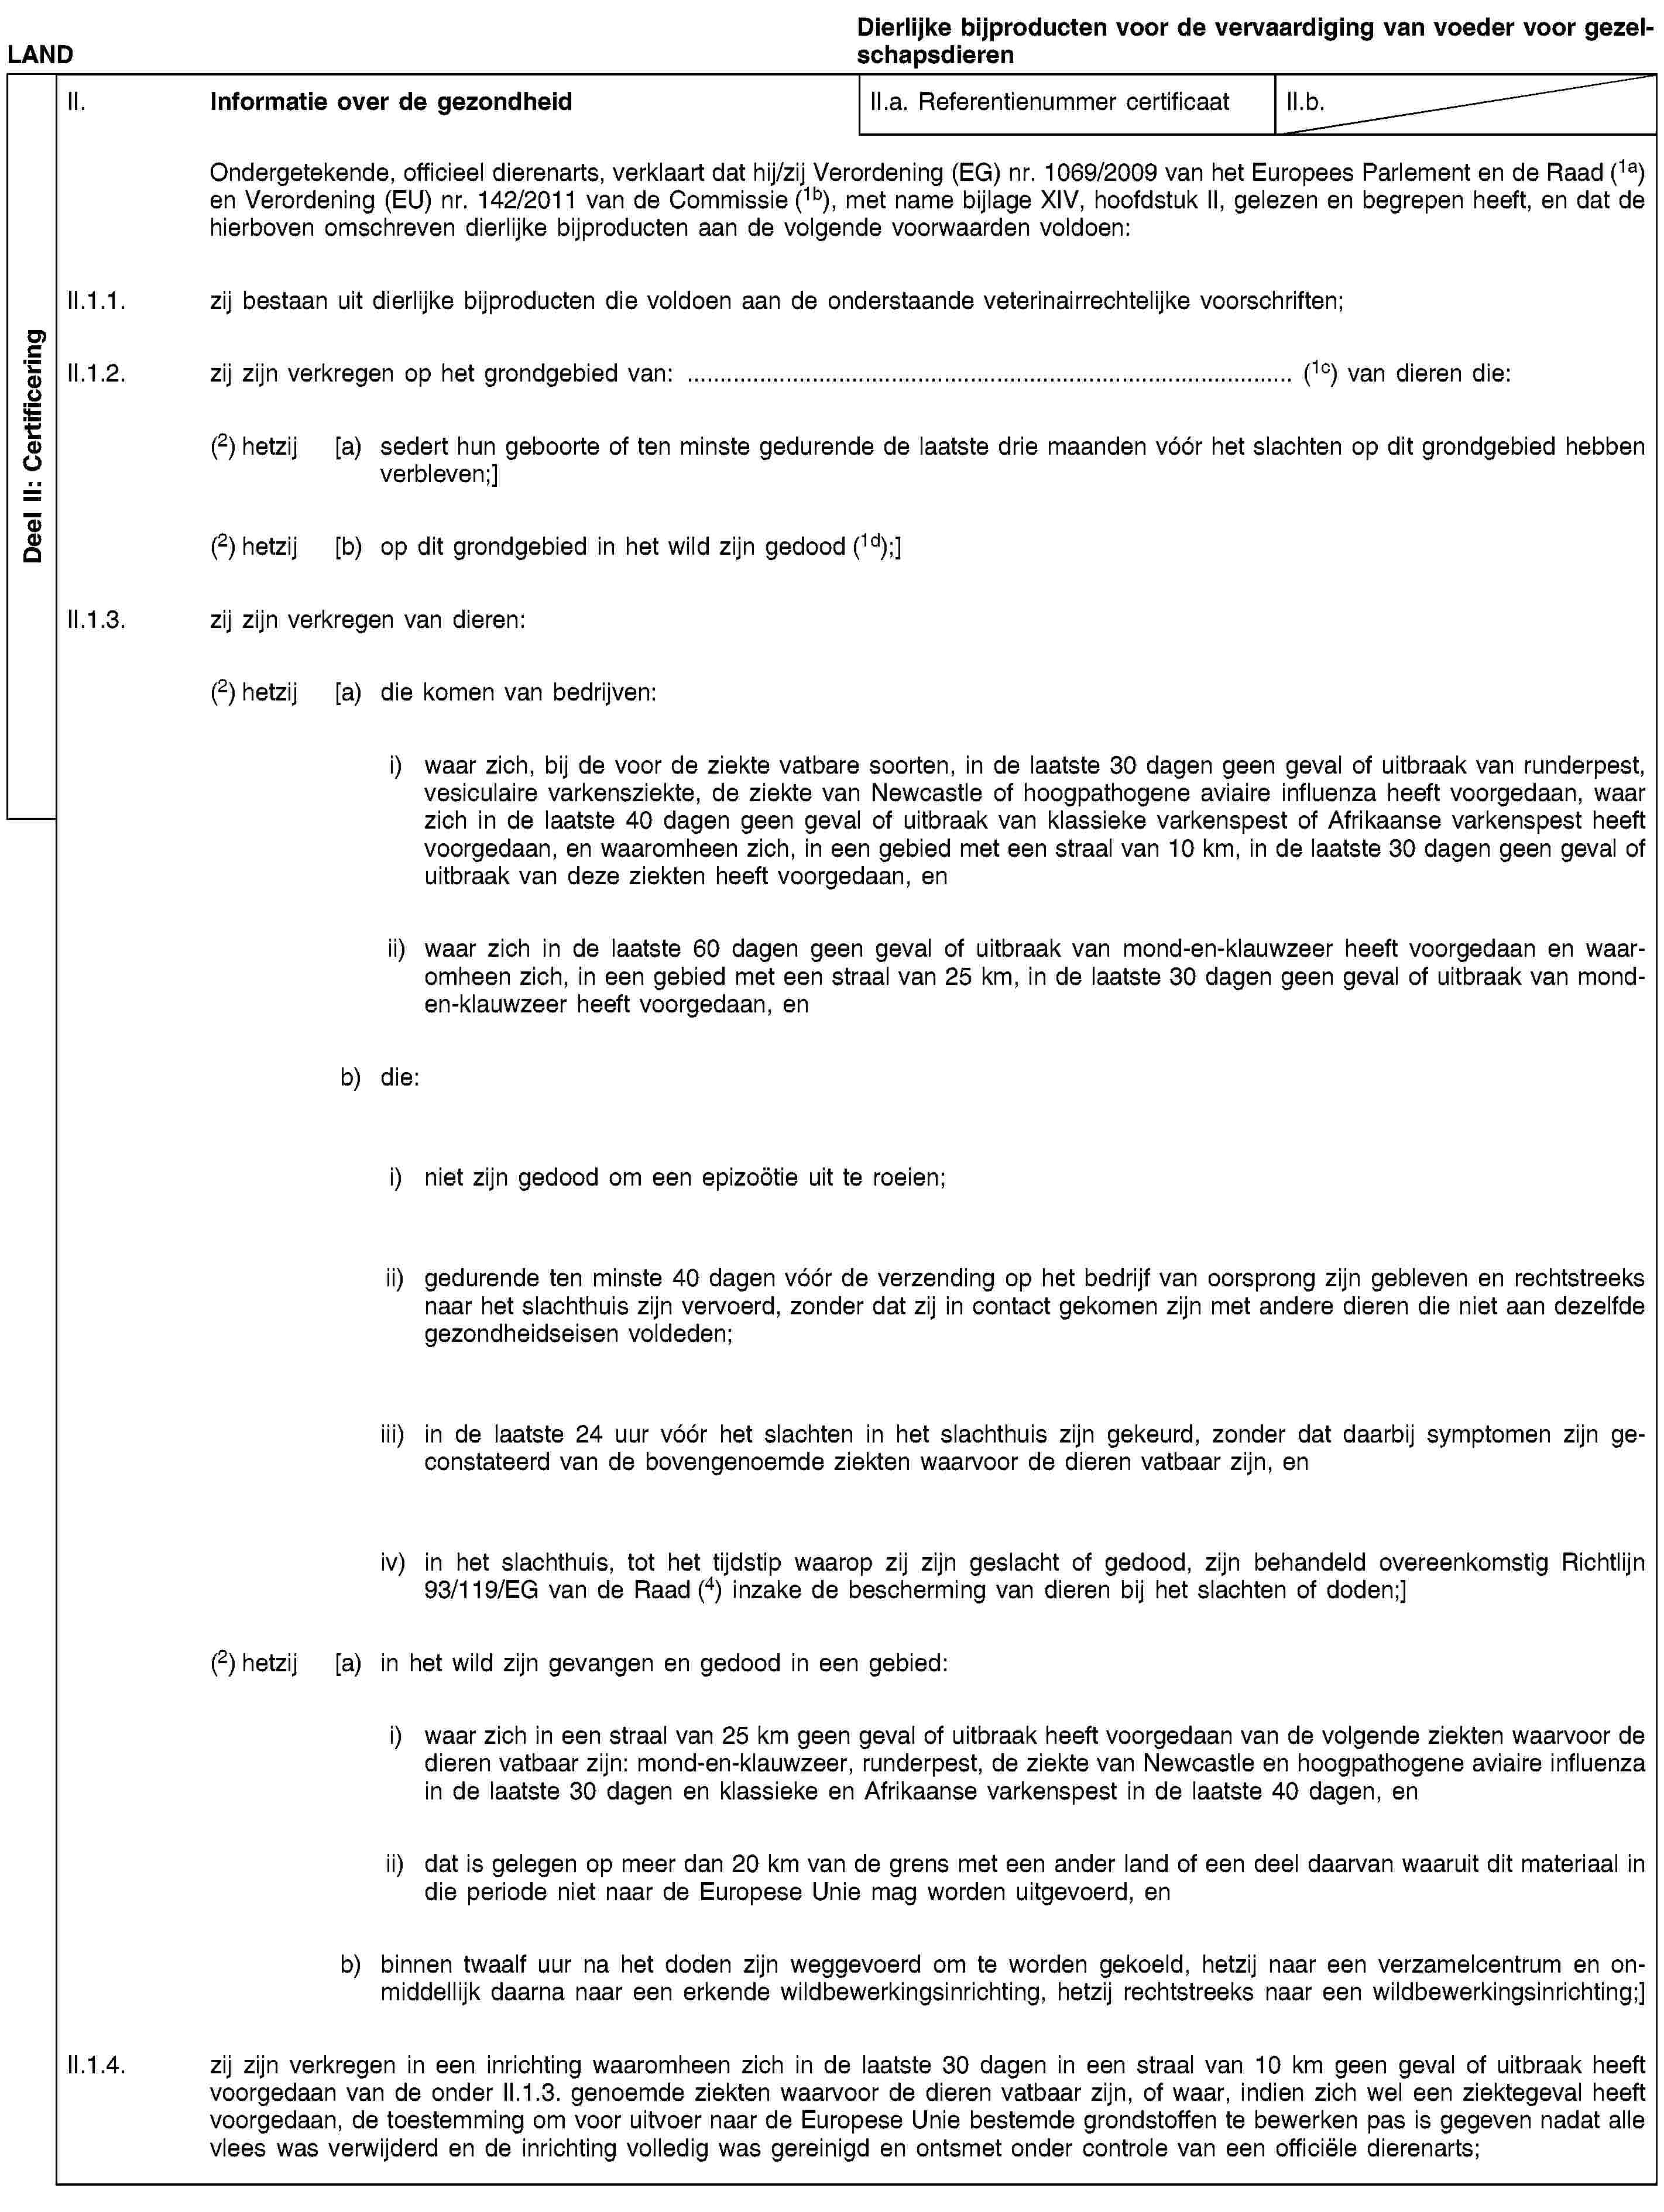 Deel II: CertificeringLANDDierlijke bijproducten voor de vervaardiging van voeder voor gezelschapsdierenII. Informatie over de gezondheidII.a. Referentienummer certificaatII.b.Ondergetekende, officieel dierenarts, verklaart dat hij/zij Verordening (EG) nr. 1069/2009 van het Europees Parlement en de Raad (1a) en Verordening (EU) nr. 142/2011 van de Commissie (1b), met name bijlage XIV, hoofdstuk II, gelezen en begrepen heeft, en dat de hierboven omschreven dierlijke bijproducten aan de volgende voorwaarden voldoen:II.1.1. zij bestaan uit dierlijke bijproducten die voldoen aan de onderstaande veterinairrechtelijke voorschriften;II.1.2. zij zijn verkregen op het grondgebied van: … (1c) van dieren die:(2) hetzij [a) sedert hun geboorte of ten minste gedurende de laatste drie maanden vóór het slachten op dit grondgebied hebben verbleven;](2) hetzij [b) op dit grondgebied in het wild zijn gedood (1d);]II.1.3. zij zijn verkregen van dieren:(2) hetzij [a) die komen van bedrijven:i) waar zich, bij de voor de ziekte vatbare soorten, in de laatste 30 dagen geen geval of uitbraak van runderpest, vesiculaire varkensziekte, de ziekte van Newcastle of hoogpathogene aviaire influenza heeft voorgedaan, waar zich in de laatste 40 dagen geen geval of uitbraak van klassieke varkenspest of Afrikaanse varkenspest heeft voorgedaan, en waaromheen zich, in een gebied met een straal van 10 km, in de laatste 30 dagen geen geval of uitbraak van deze ziekten heeft voorgedaan, enii) waar zich in de laatste 60 dagen geen geval of uitbraak van mond-en-klauwzeer heeft voorgedaan en waaromheen zich, in een gebied met een straal van 25 km, in de laatste 30 dagen geen geval of uitbraak van mond-en-klauwzeer heeft voorgedaan, enb) die:i) niet zijn gedood om een epizoötie uit te roeien;ii) gedurende ten minste 40 dagen vóór de verzending op het bedrijf van oorsprong zijn gebleven en rechtstreeks naar het slachthuis zijn vervoerd, zonder dat zij in contact gekomen zijn met andere dieren die niet aan dezelfde gezondheidseisen voldeden;iii) in de laatste 24 uur vóór het slachten in het slachthuis zijn gekeurd, zonder dat daarbij symptomen zijn geconstateerd van de bovengenoemde ziekten waarvoor de dieren vatbaar zijn, eniv) in het slachthuis, tot het tijdstip waarop zij zijn geslacht of gedood, zijn behandeld overeenkomstig Richtlijn 93/119/EG van de Raad (4) inzake de bescherming van dieren bij het slachten of doden;](2) hetzij [a) in het wild zijn gevangen en gedood in een gebied:i) waar zich in een straal van 25 km geen geval of uitbraak heeft voorgedaan van de volgende ziekten waarvoor de dieren vatbaar zijn: mond-en-klauwzeer, runderpest, de ziekte van Newcastle en hoogpathogene aviaire influenza in de laatste 30 dagen en klassieke en Afrikaanse varkenspest in de laatste 40 dagen, enii) dat is gelegen op meer dan 20 km van de grens met een ander land of een deel daarvan waaruit dit materiaal in die periode niet naar de Europese Unie mag worden uitgevoerd, enb) binnen twaalf uur na het doden zijn weggevoerd om te worden gekoeld, hetzij naar een verzamelcentrum en onmiddellijk daarna naar een erkende wildbewerkingsinrichting, hetzij rechtstreeks naar een wildbewerkingsinrichting;]II.1.4. zij zijn verkregen in een inrichting waaromheen zich in de laatste 30 dagen in een straal van 10 km geen geval of uitbraak heeft voorgedaan van de onder II.1.3. genoemde ziekten waarvoor de dieren vatbaar zijn, of waar, indien zich wel een ziektegeval heeft voorgedaan, de toestemming om voor uitvoer naar de Europese Unie bestemde grondstoffen te bewerken pas is gegeven nadat alle vlees was verwijderd en de inrichting volledig was gereinigd en ontsmet onder controle van een officiële dierenarts;